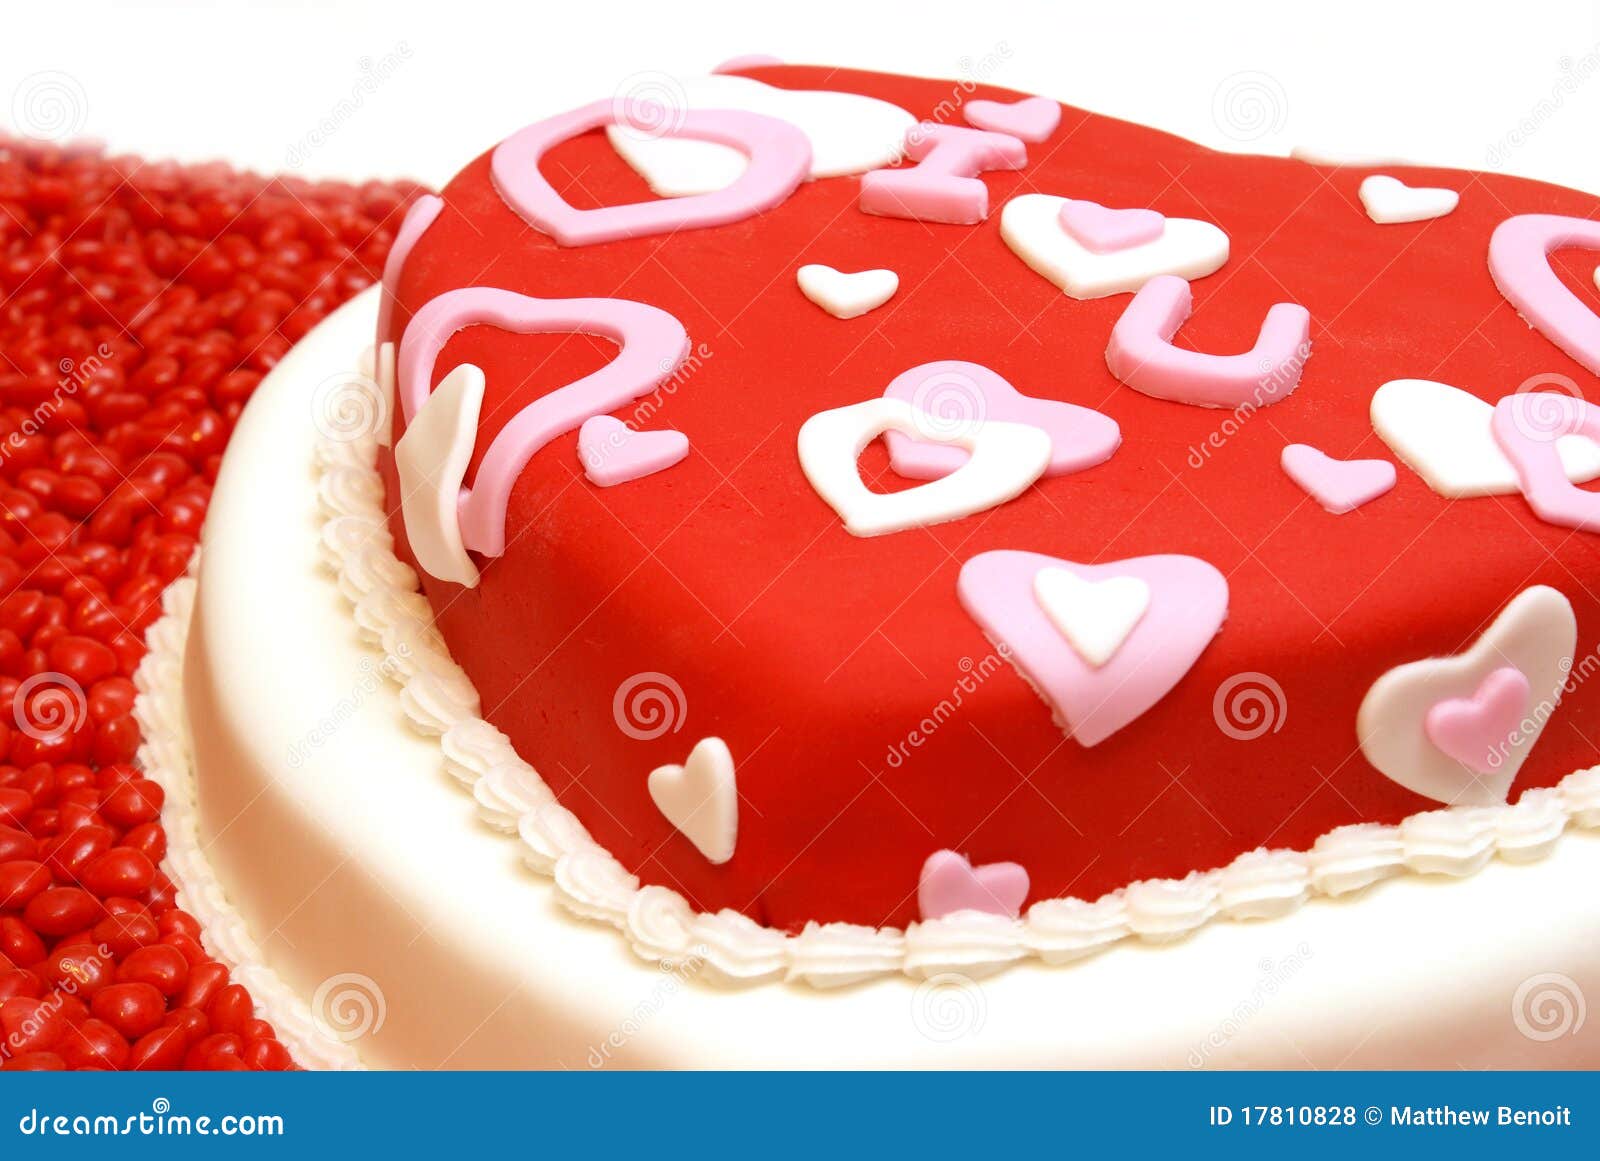 心形蛋糕. 粉红色背景上镶有爱的铭文的心形慕斯蛋糕 库存照片. 图片 包括有 结霜, 甜甜, 祝贺, 红色 - 206976546